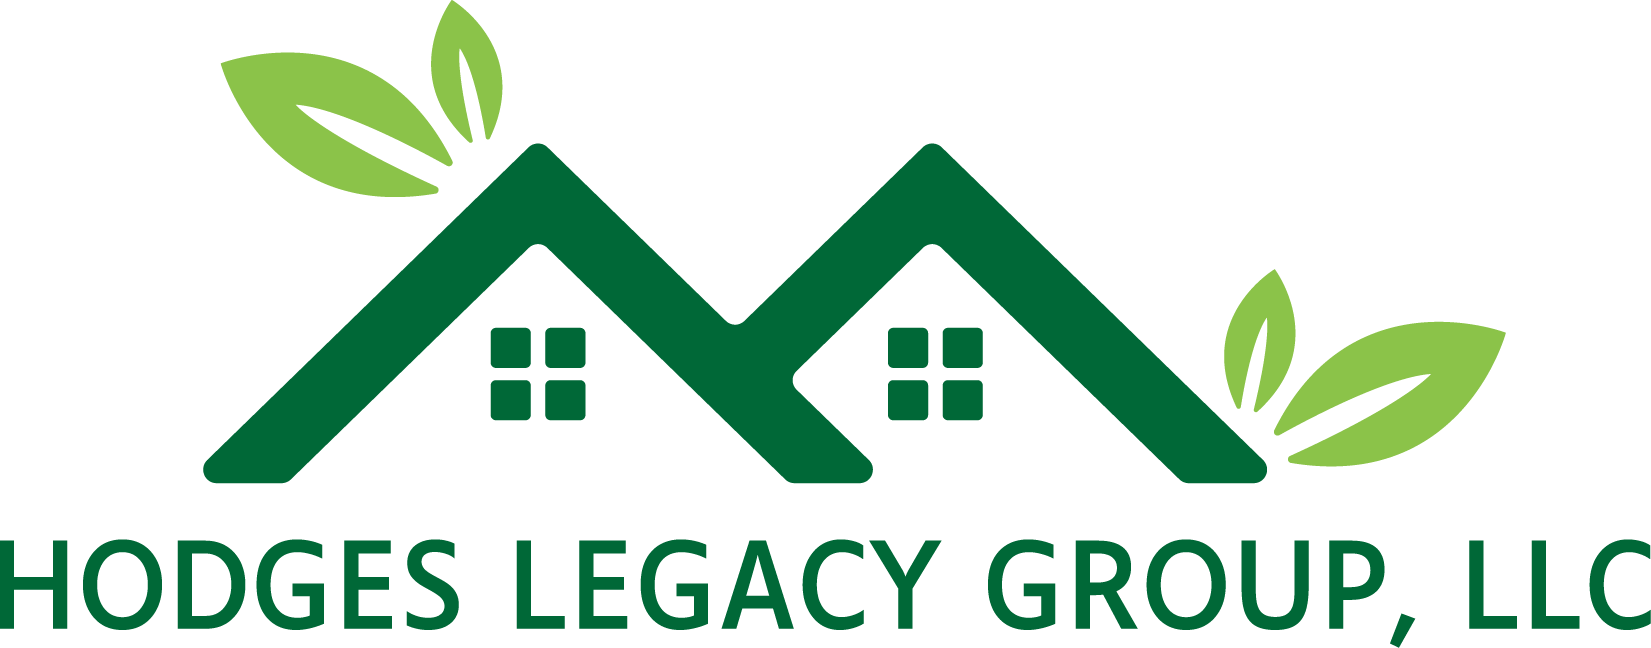 D. Hodges Legacy Group (acero)